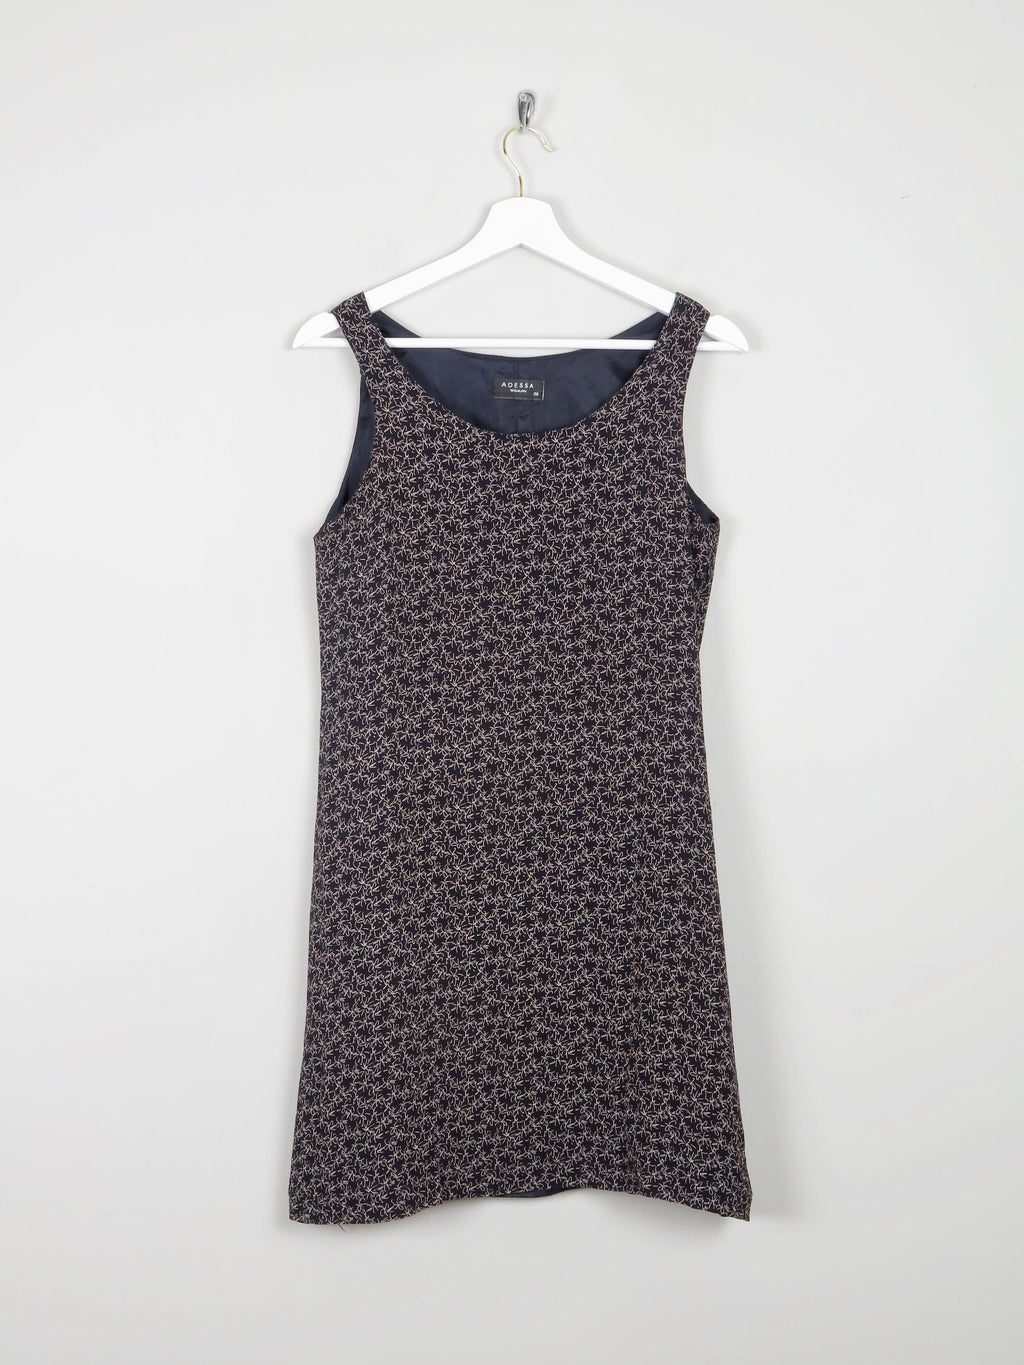 Black Short Printed Vintage Dress With Scoop Neckline S - The Harlequin